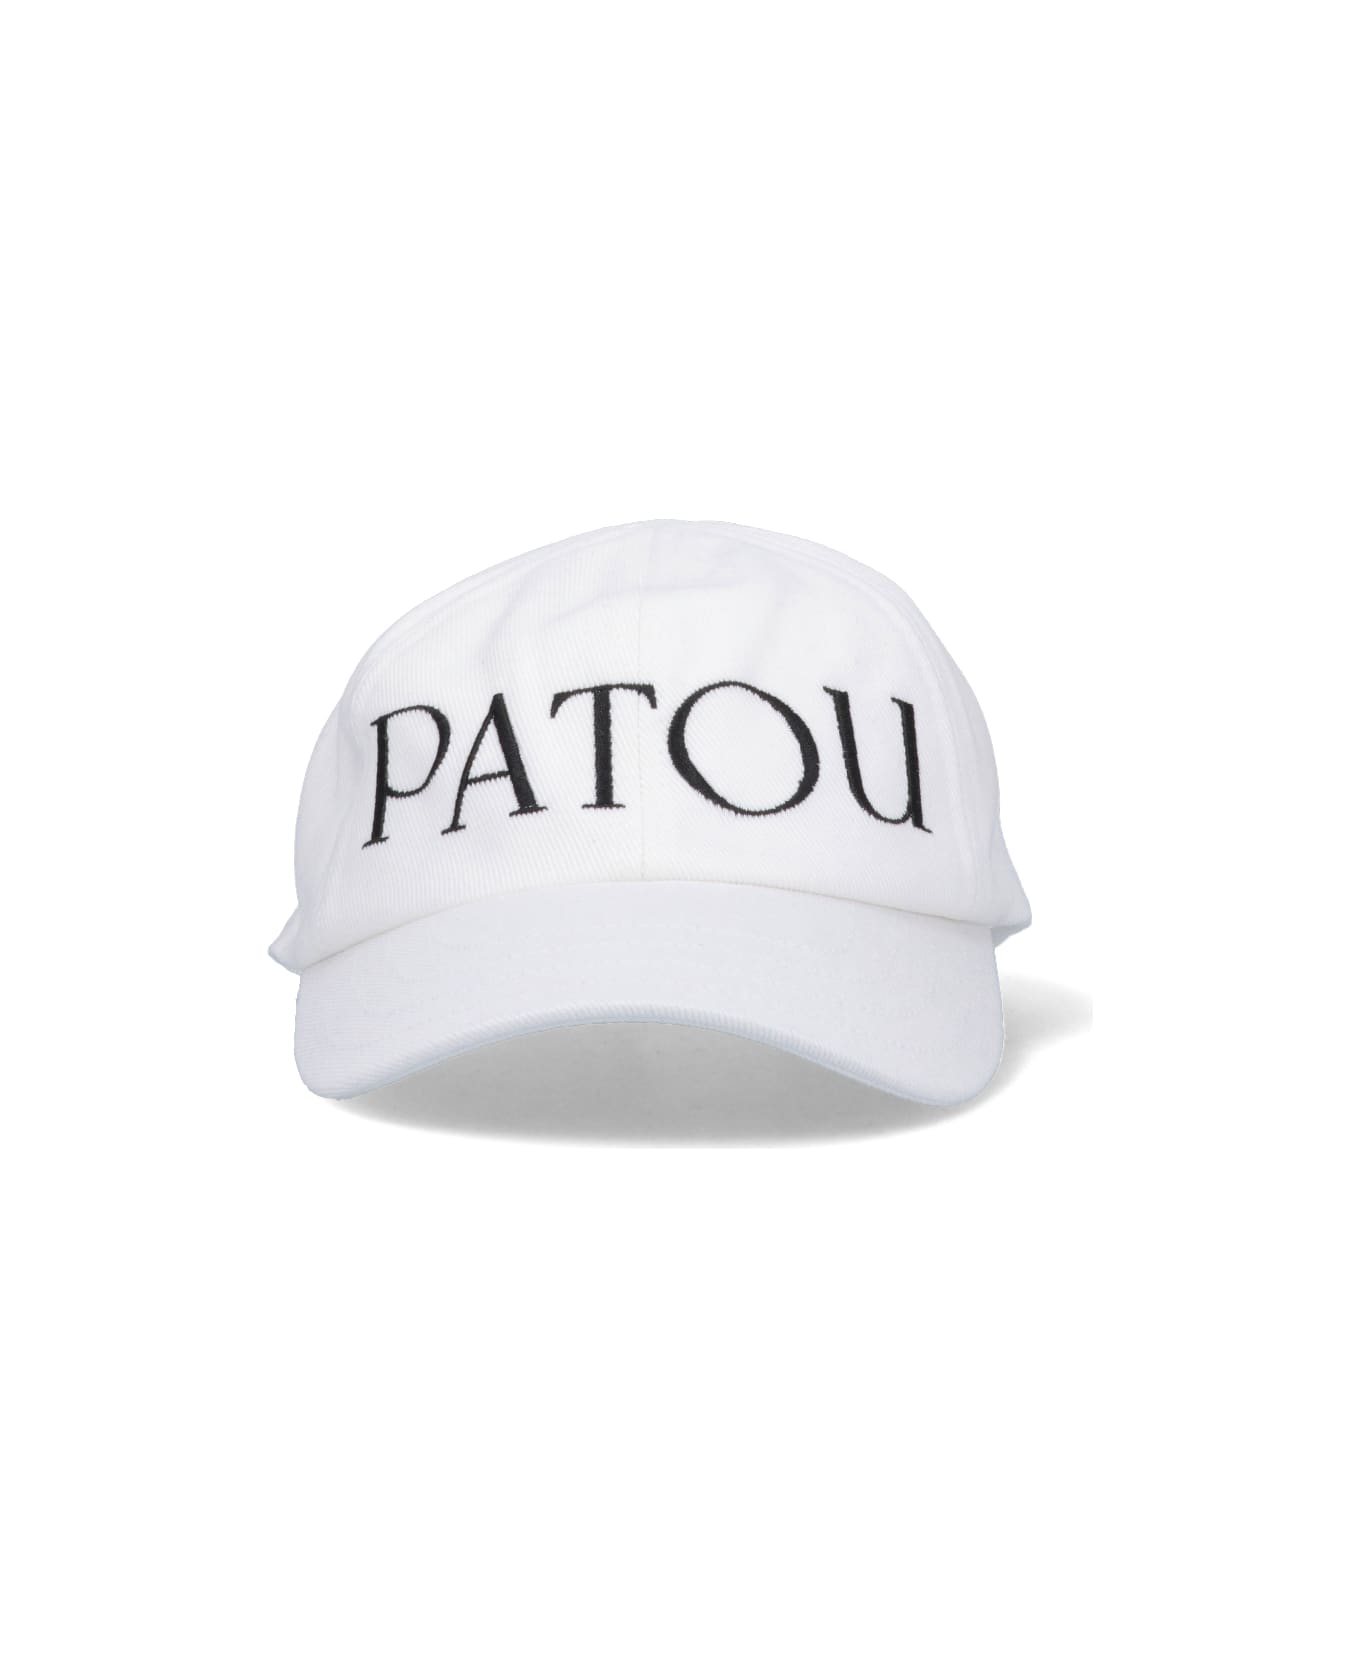 Patou Hat - WHITE